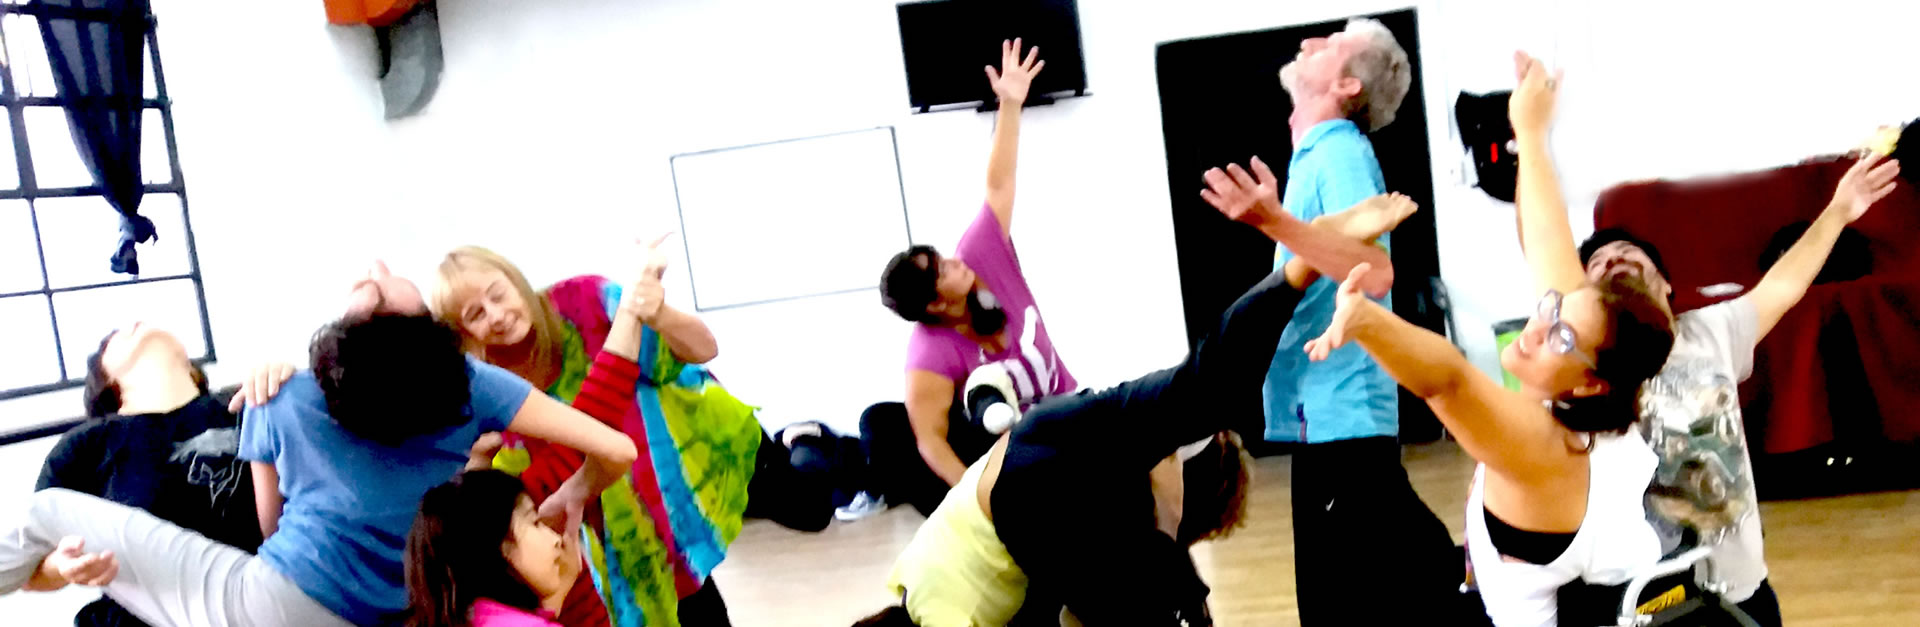 Seminario Intensivo de Danza Integradora con orientación pedagógica